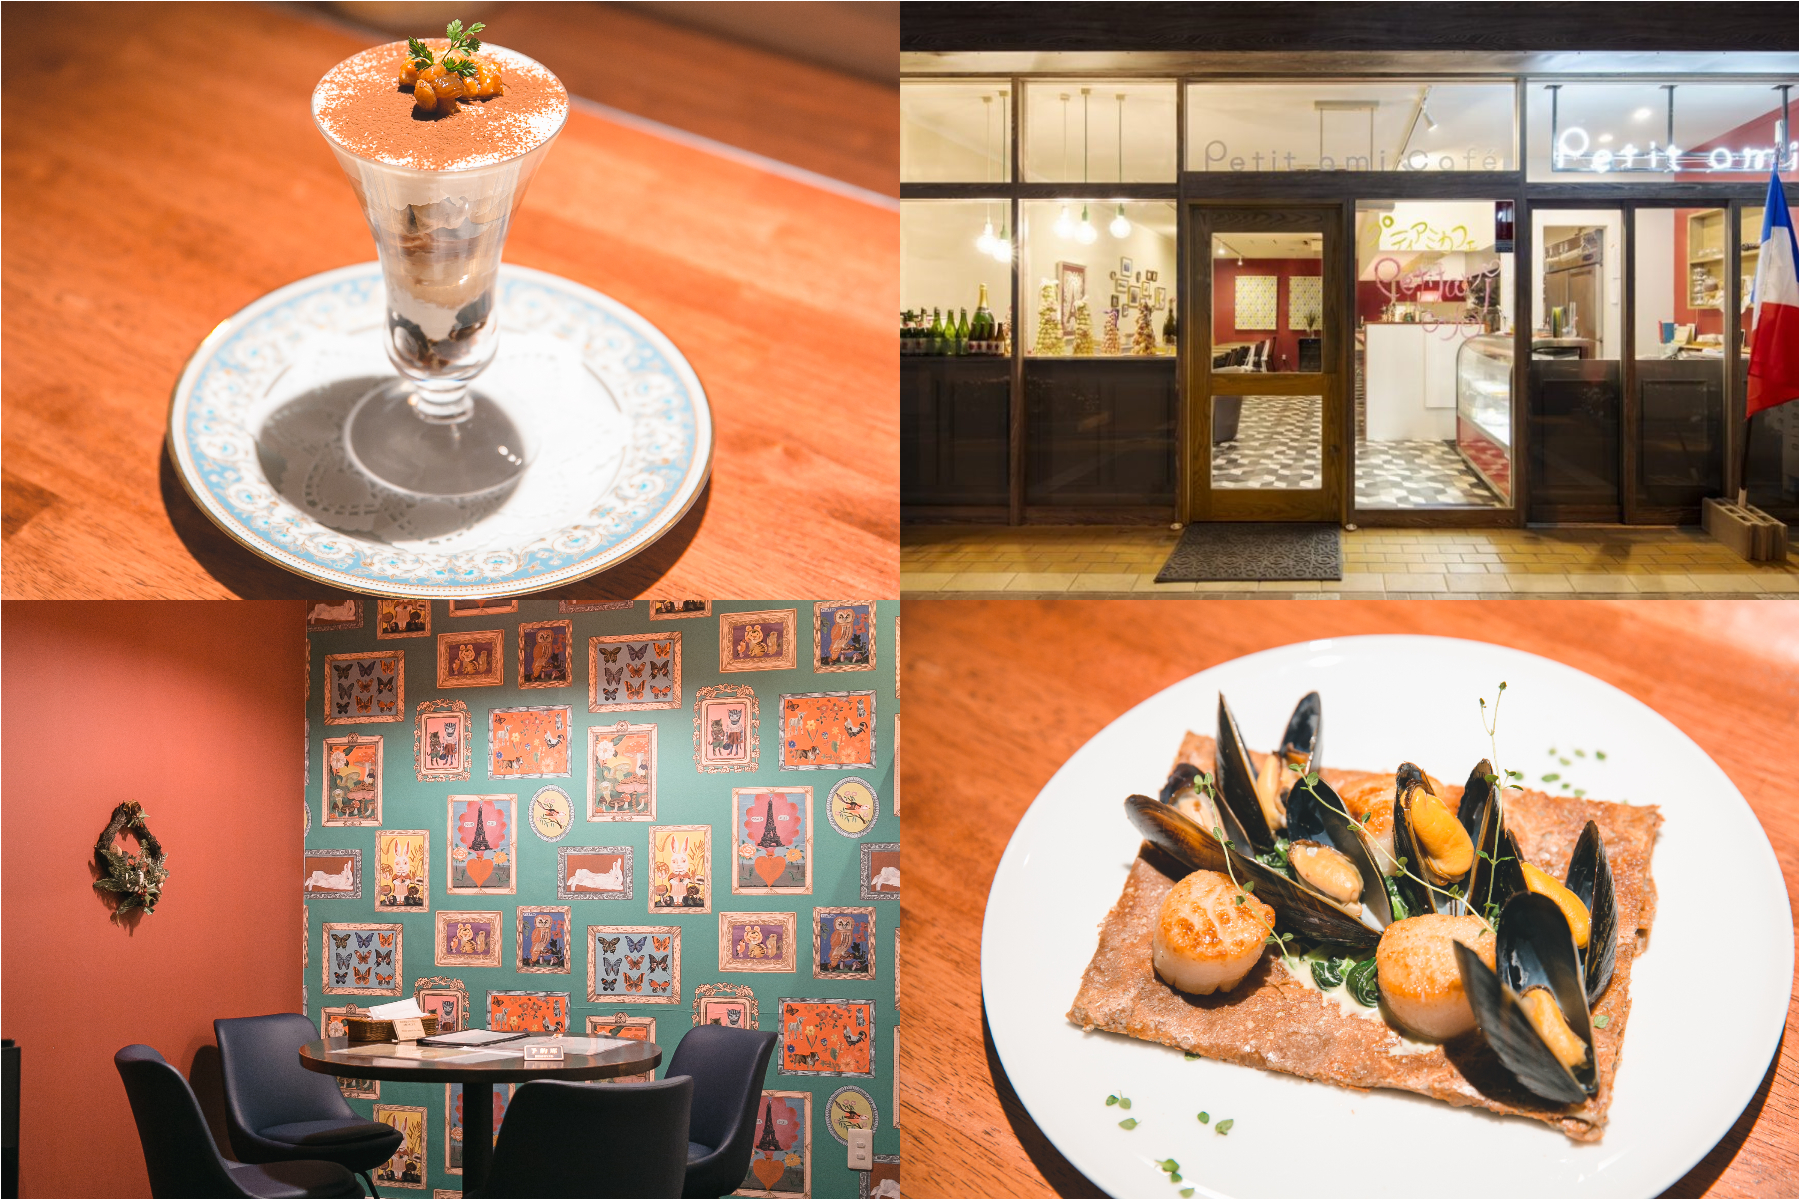 【設計工務店アラン】浜松の街中にある小さなフレンチカフェ 「Petit ami cafe（プティアミカフェ）」